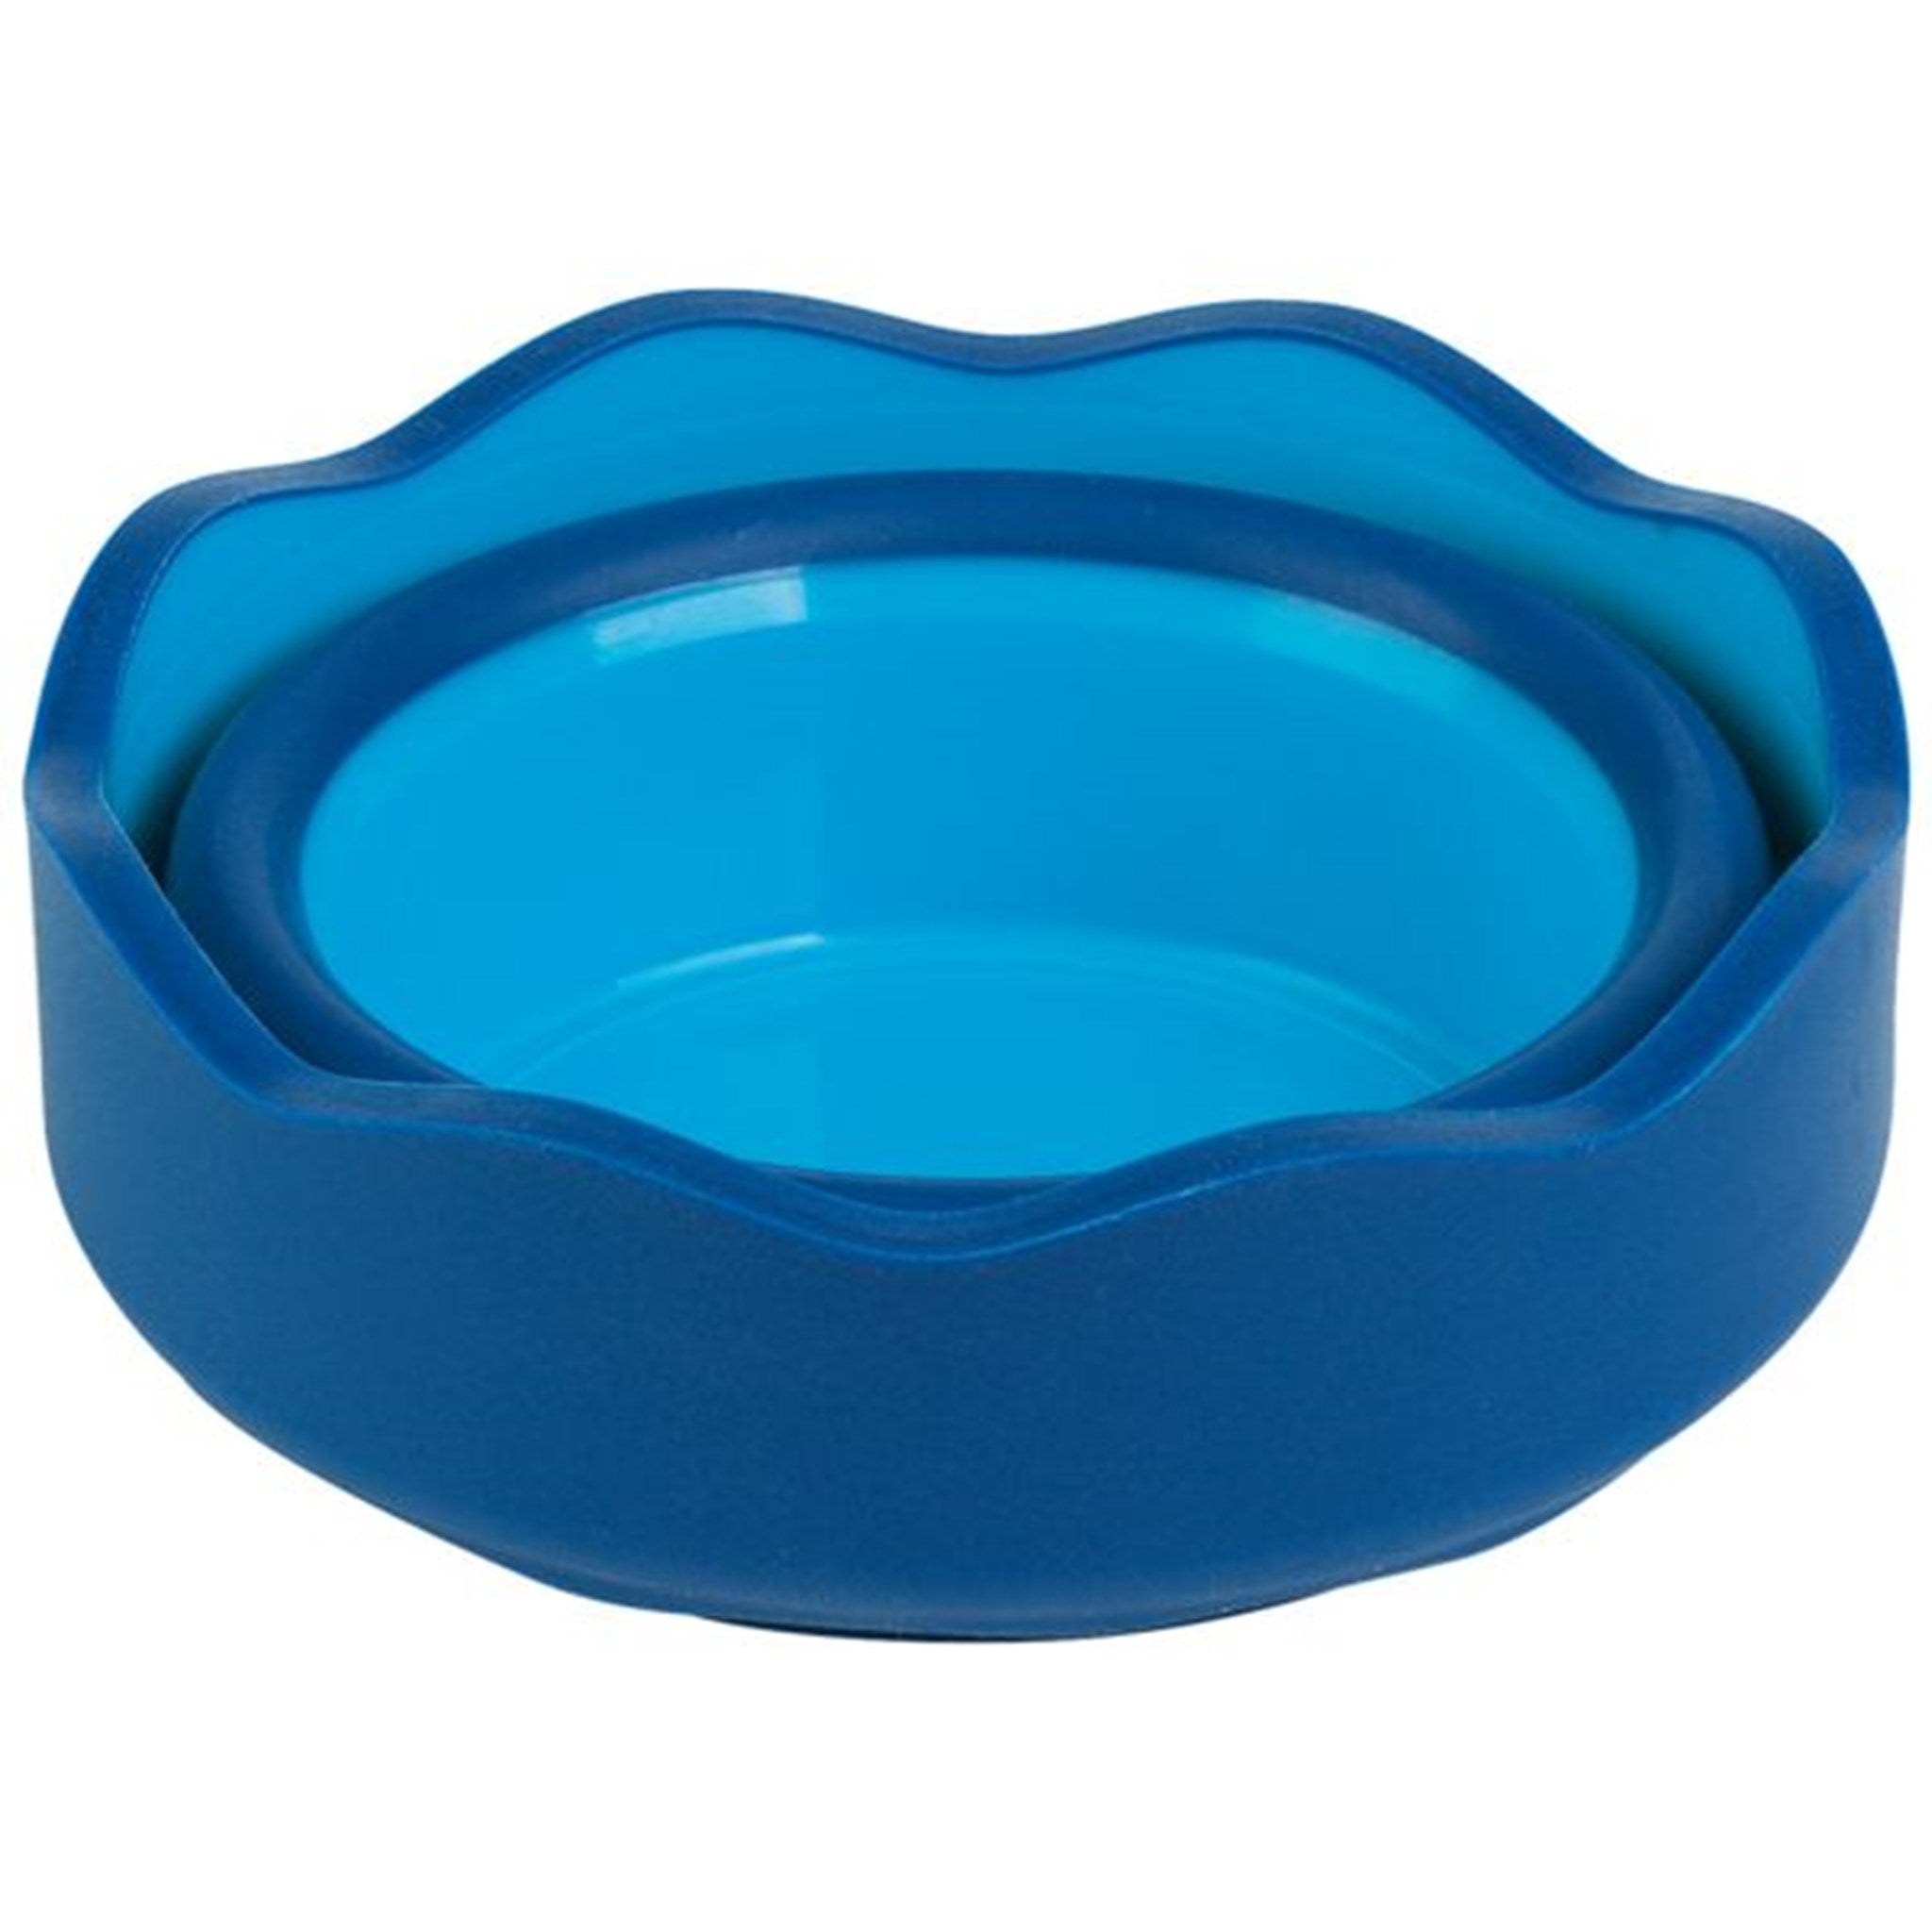 Faber Castell Water Pot Blue 3